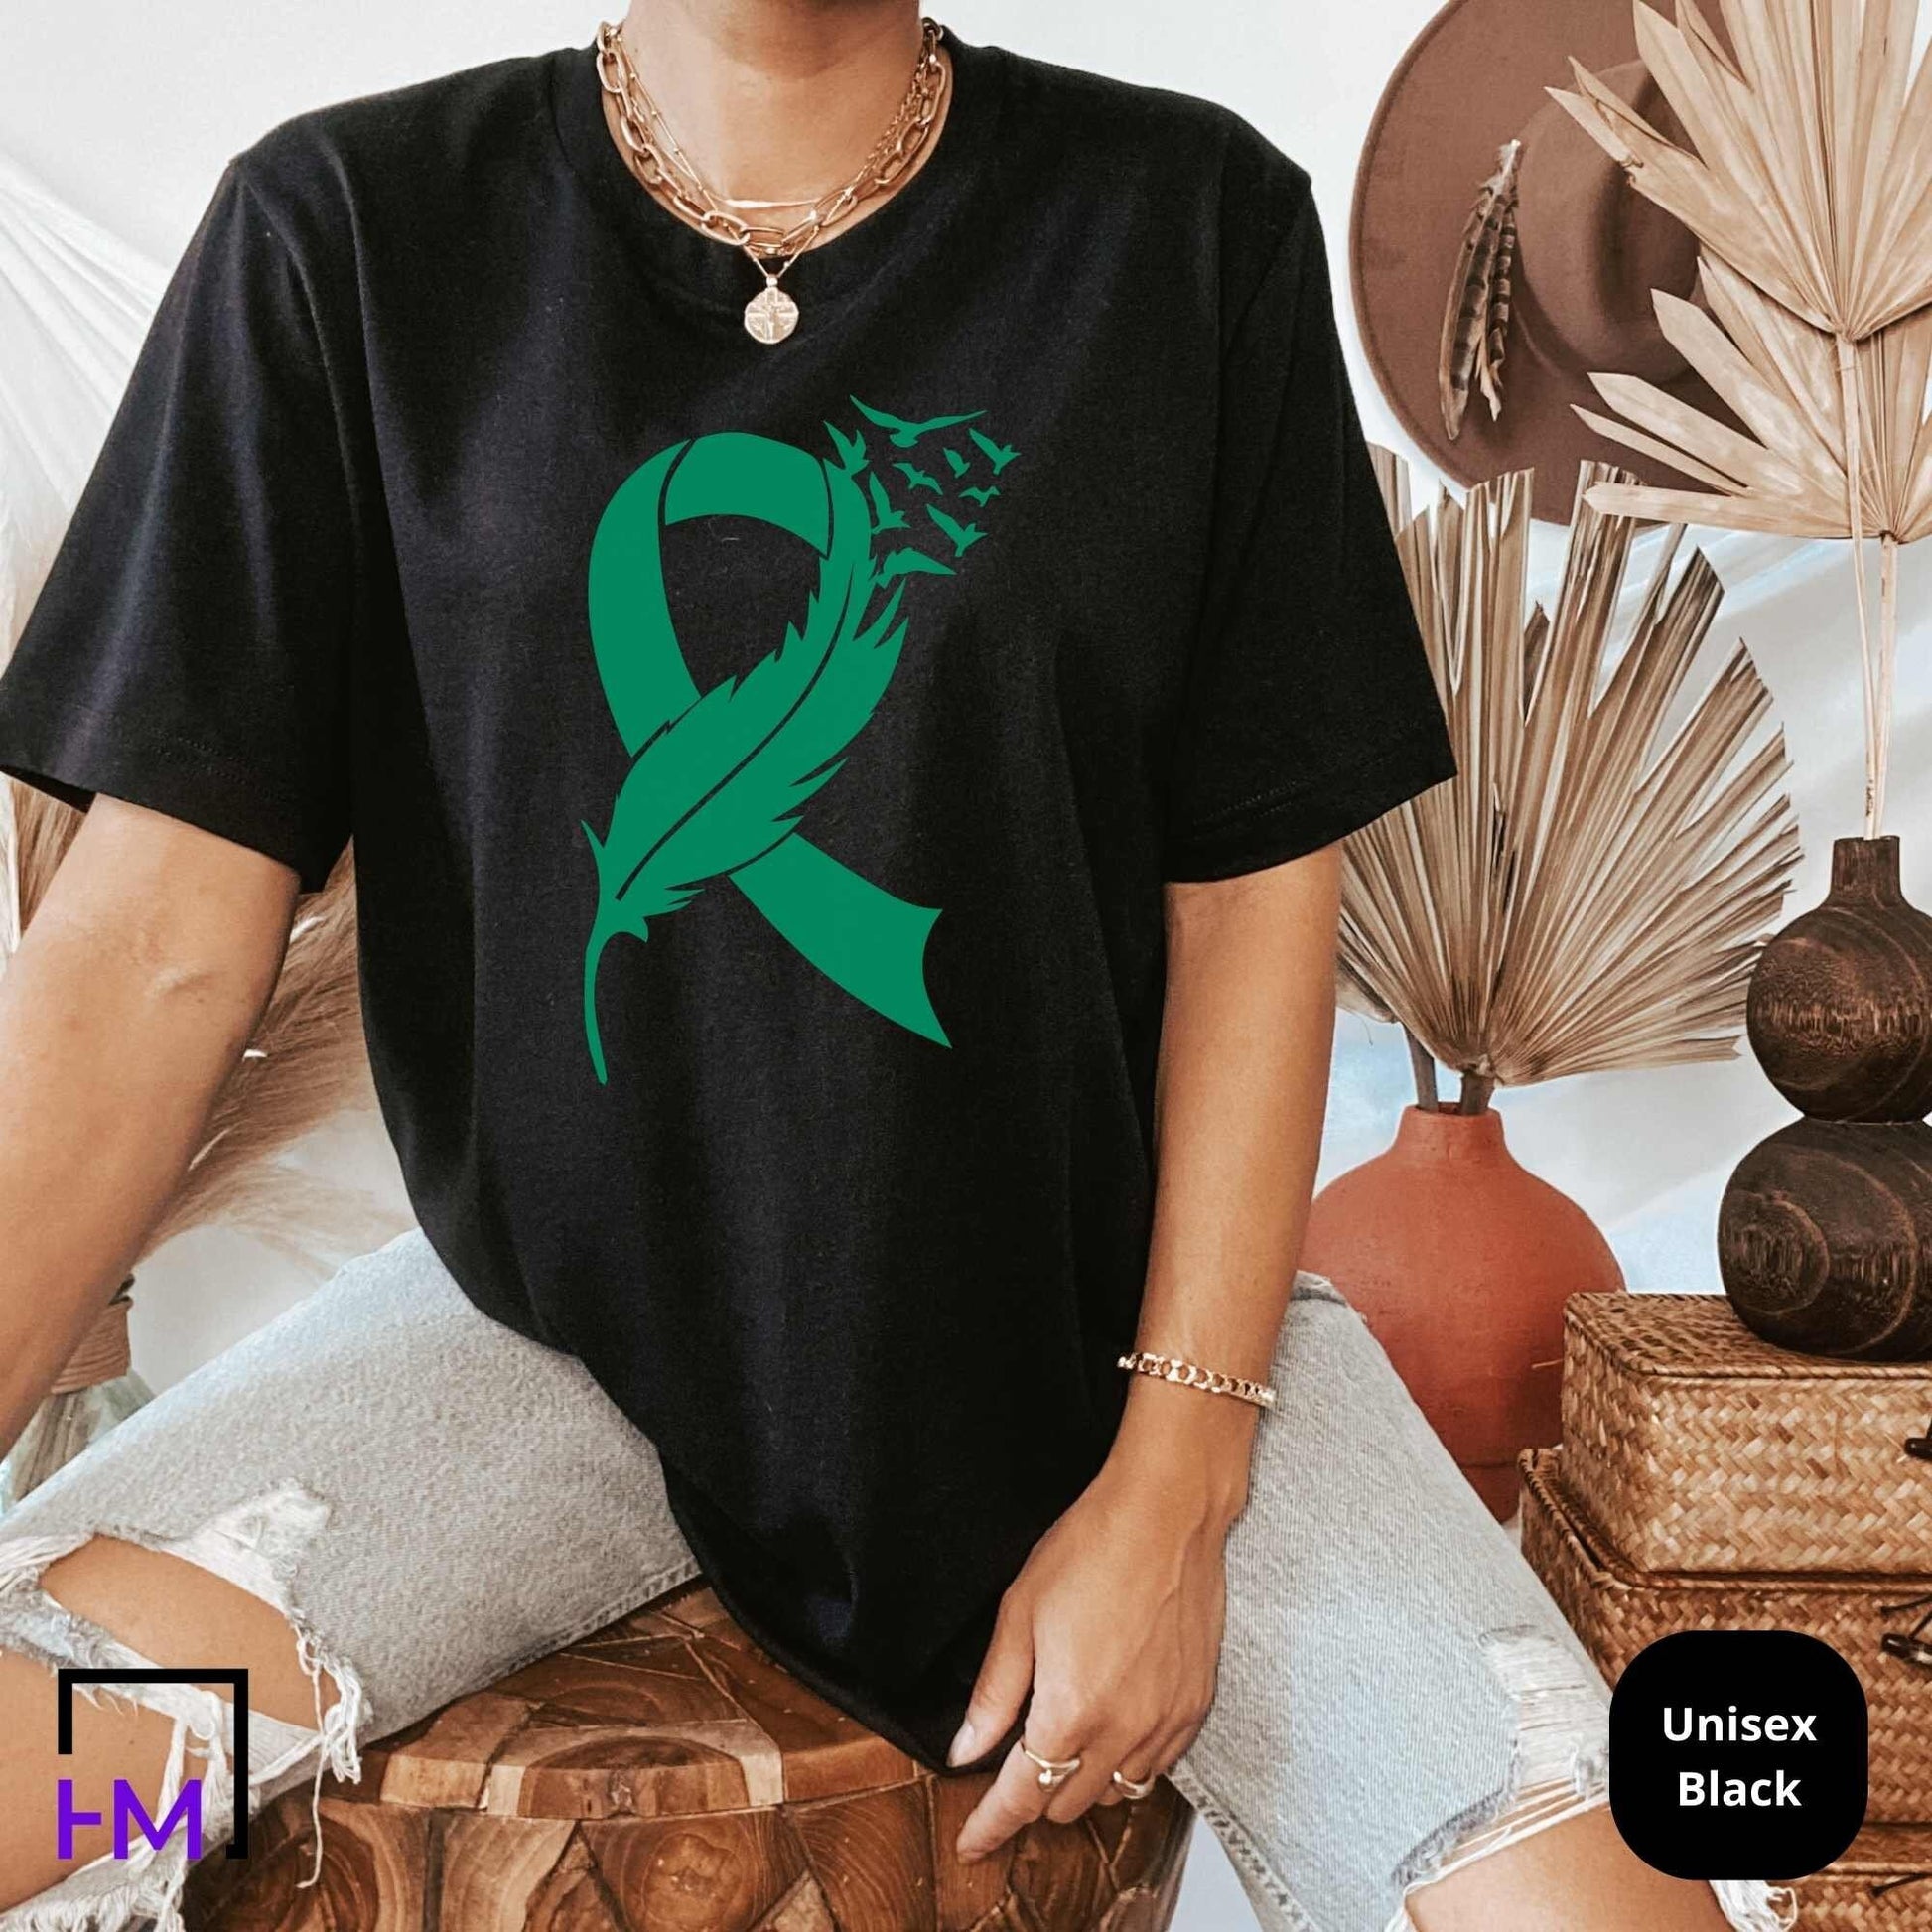 Liver Cancer Shirt, Liver Cancer Warrior Gift, Liver Cancer Green Ribbon Shirt, Liver Cancer Awareness Shirt, Cancer Fighter Gifts, Support